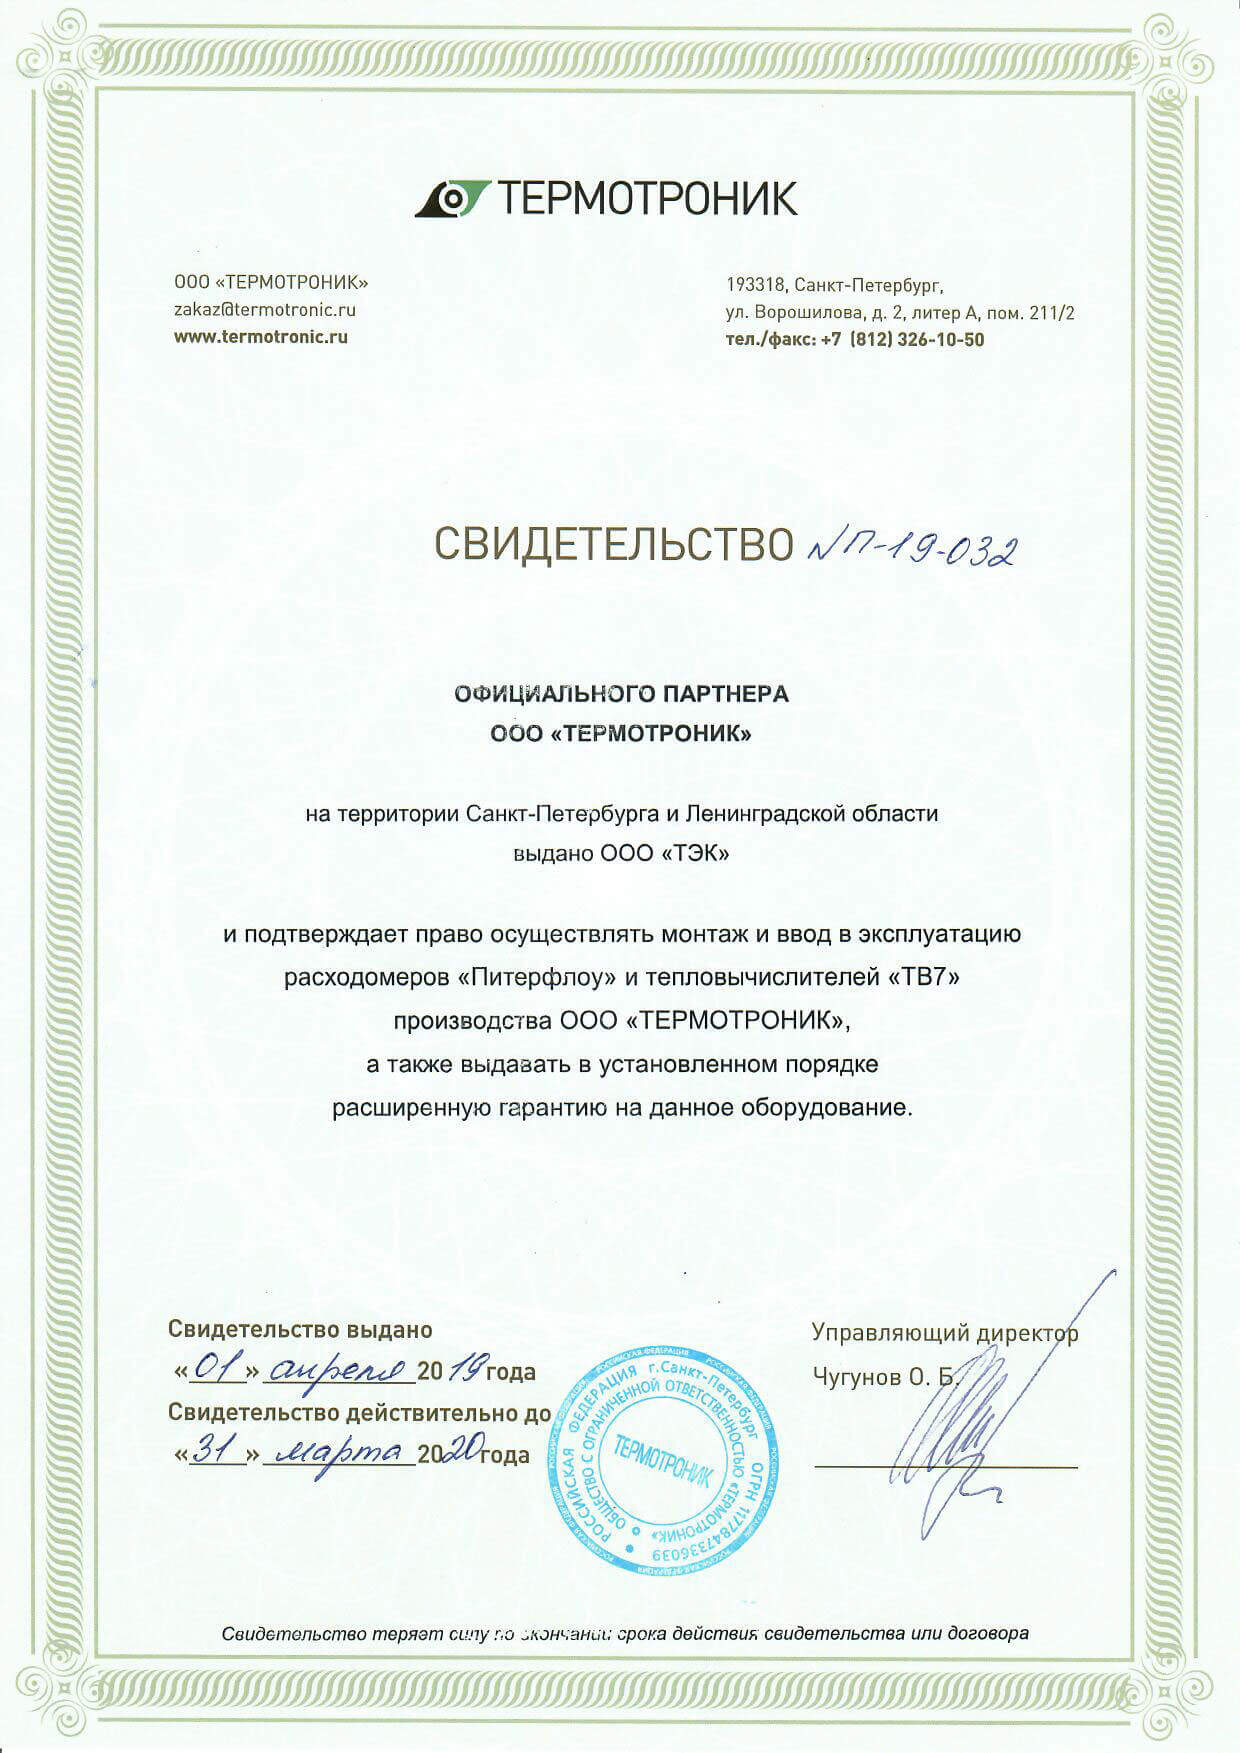 Сертификат Термотроник - сертификат официального партнера